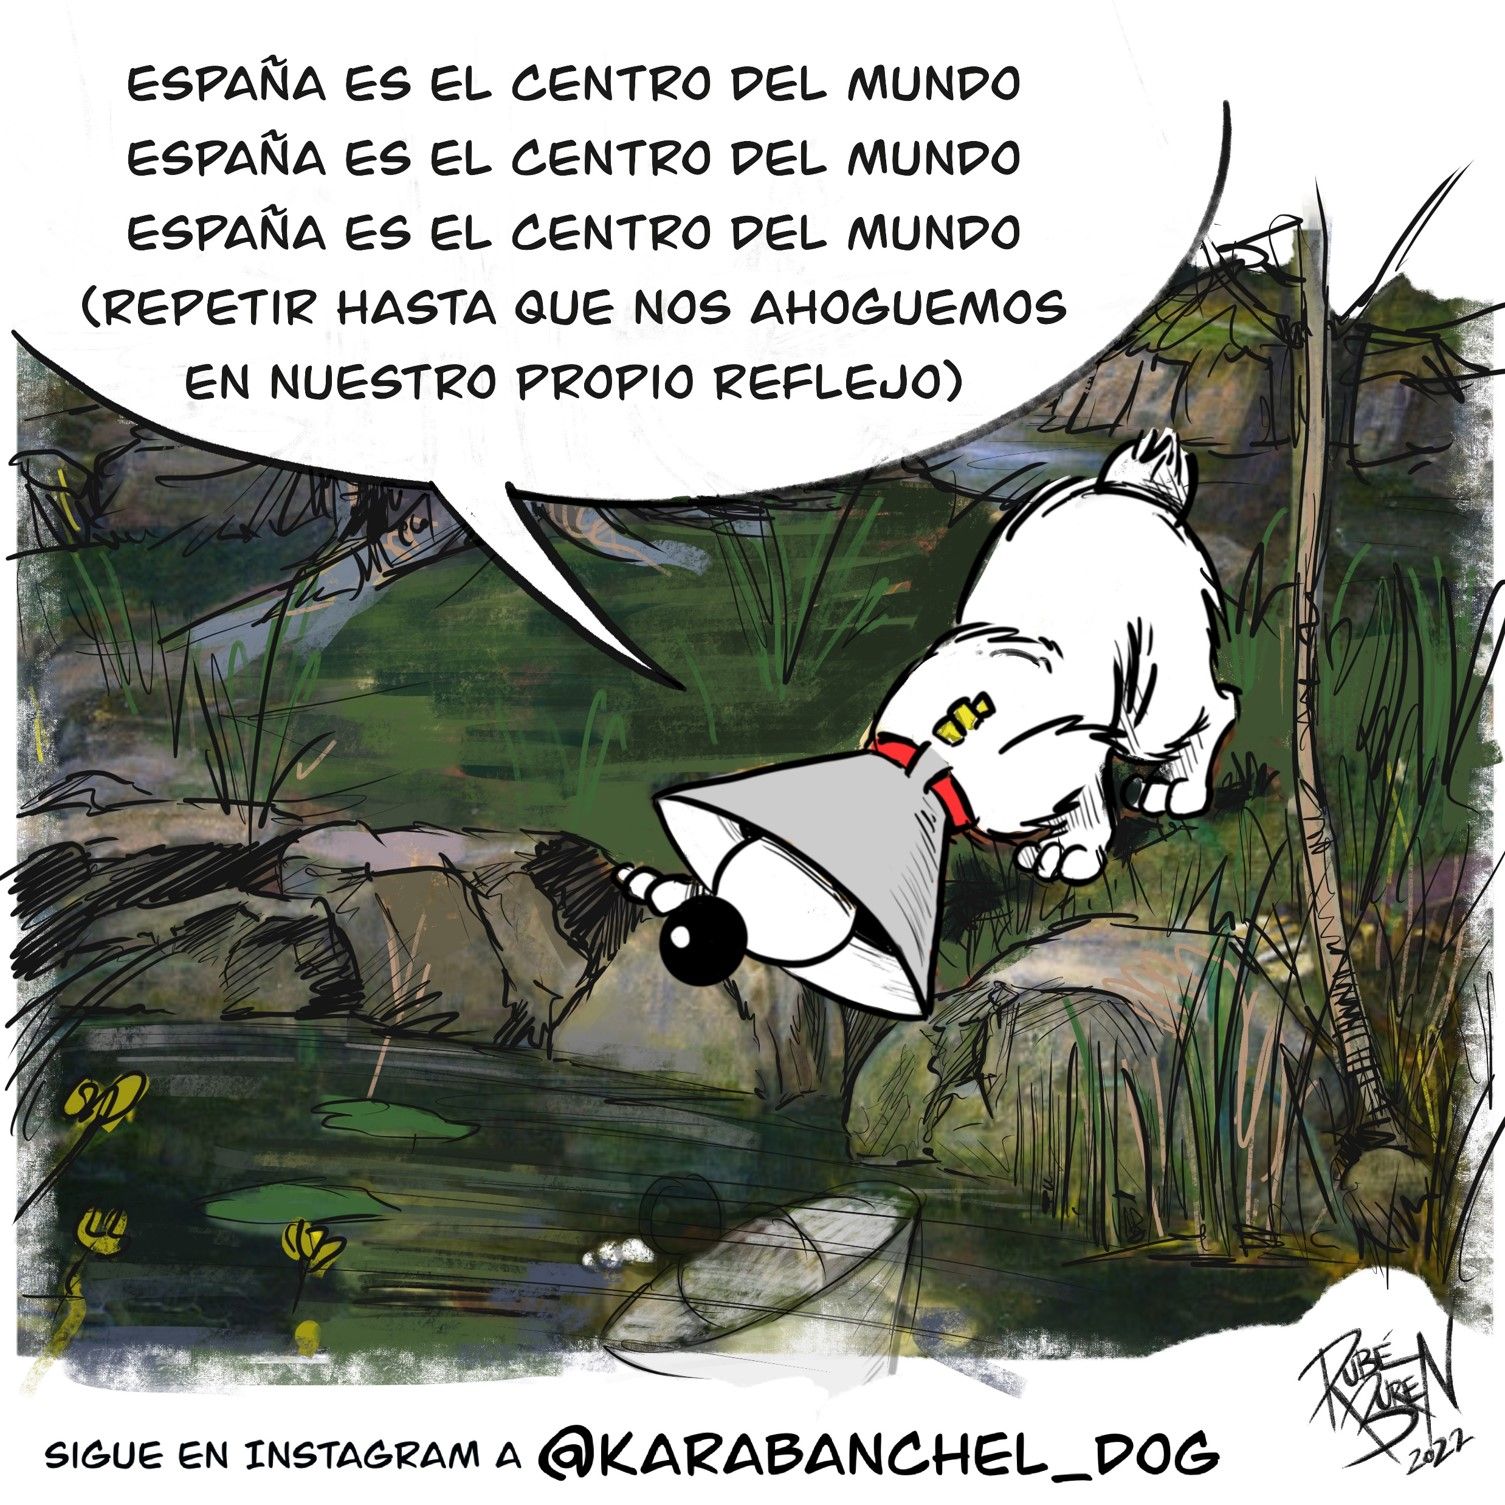 Karabanchel Dog España